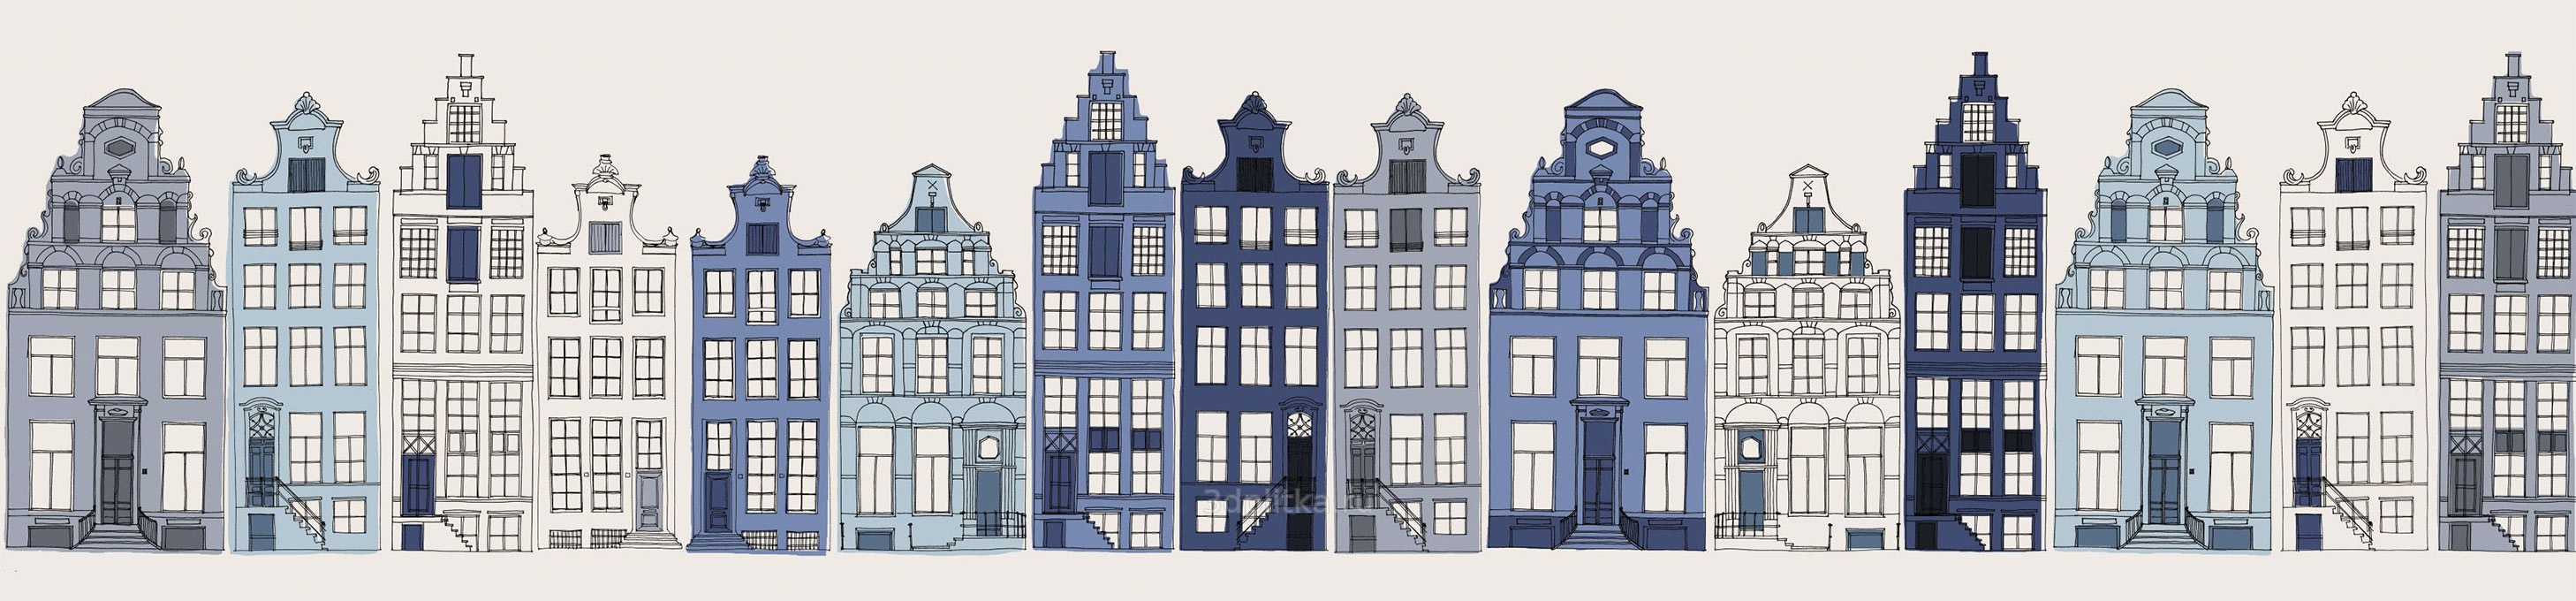 Голландские домики Графика